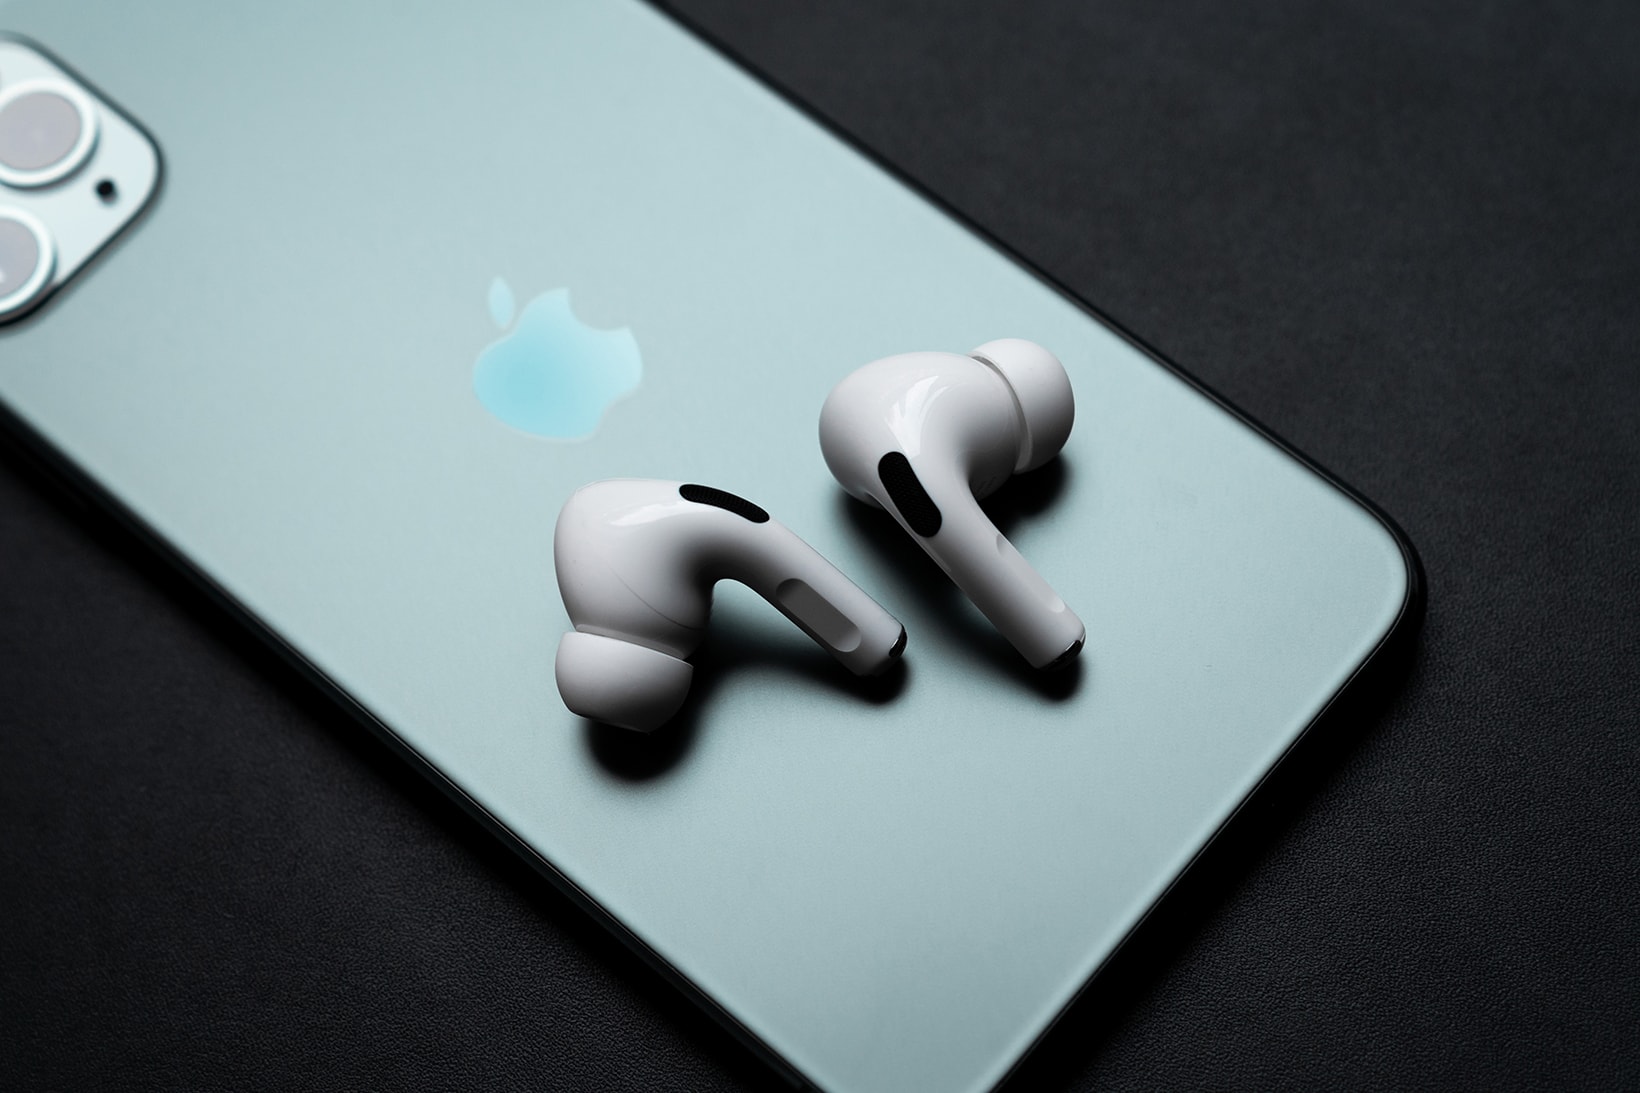 apple airpods pro earphone wireless earbuds tech technology 